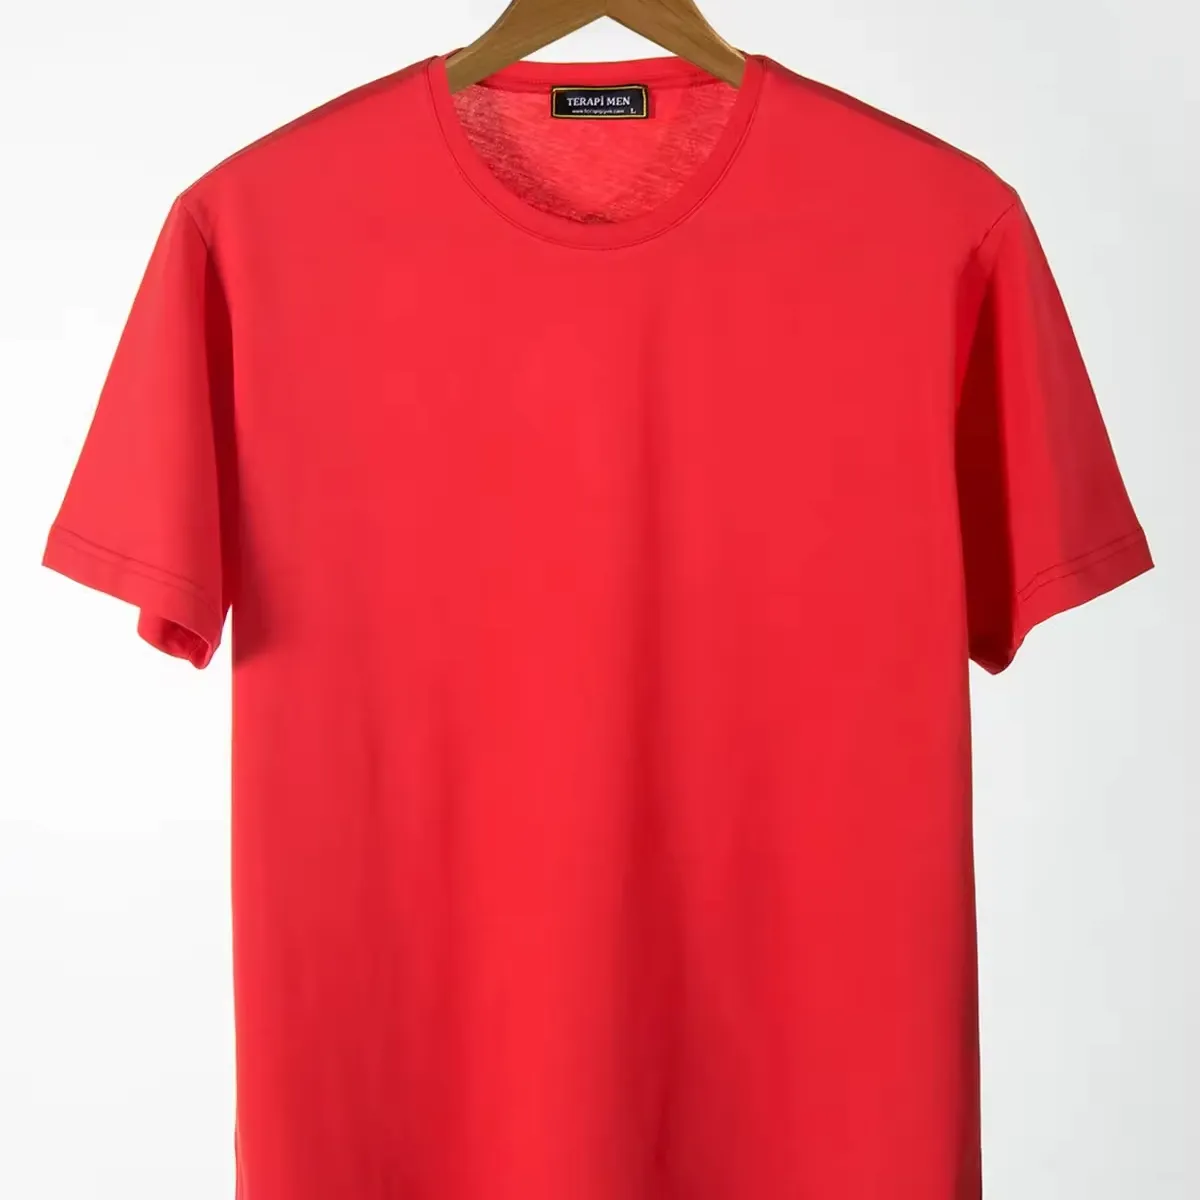 कॉटन रेड ब्लैंक टी शर्ट थोक कस्टम ओवरसाइज़्ड पुरुषों की कॉटन टी शर्ट प्रिंट डिज़ाइन भारी वजन कॉटन कैज़ुअल गोल गर्दन